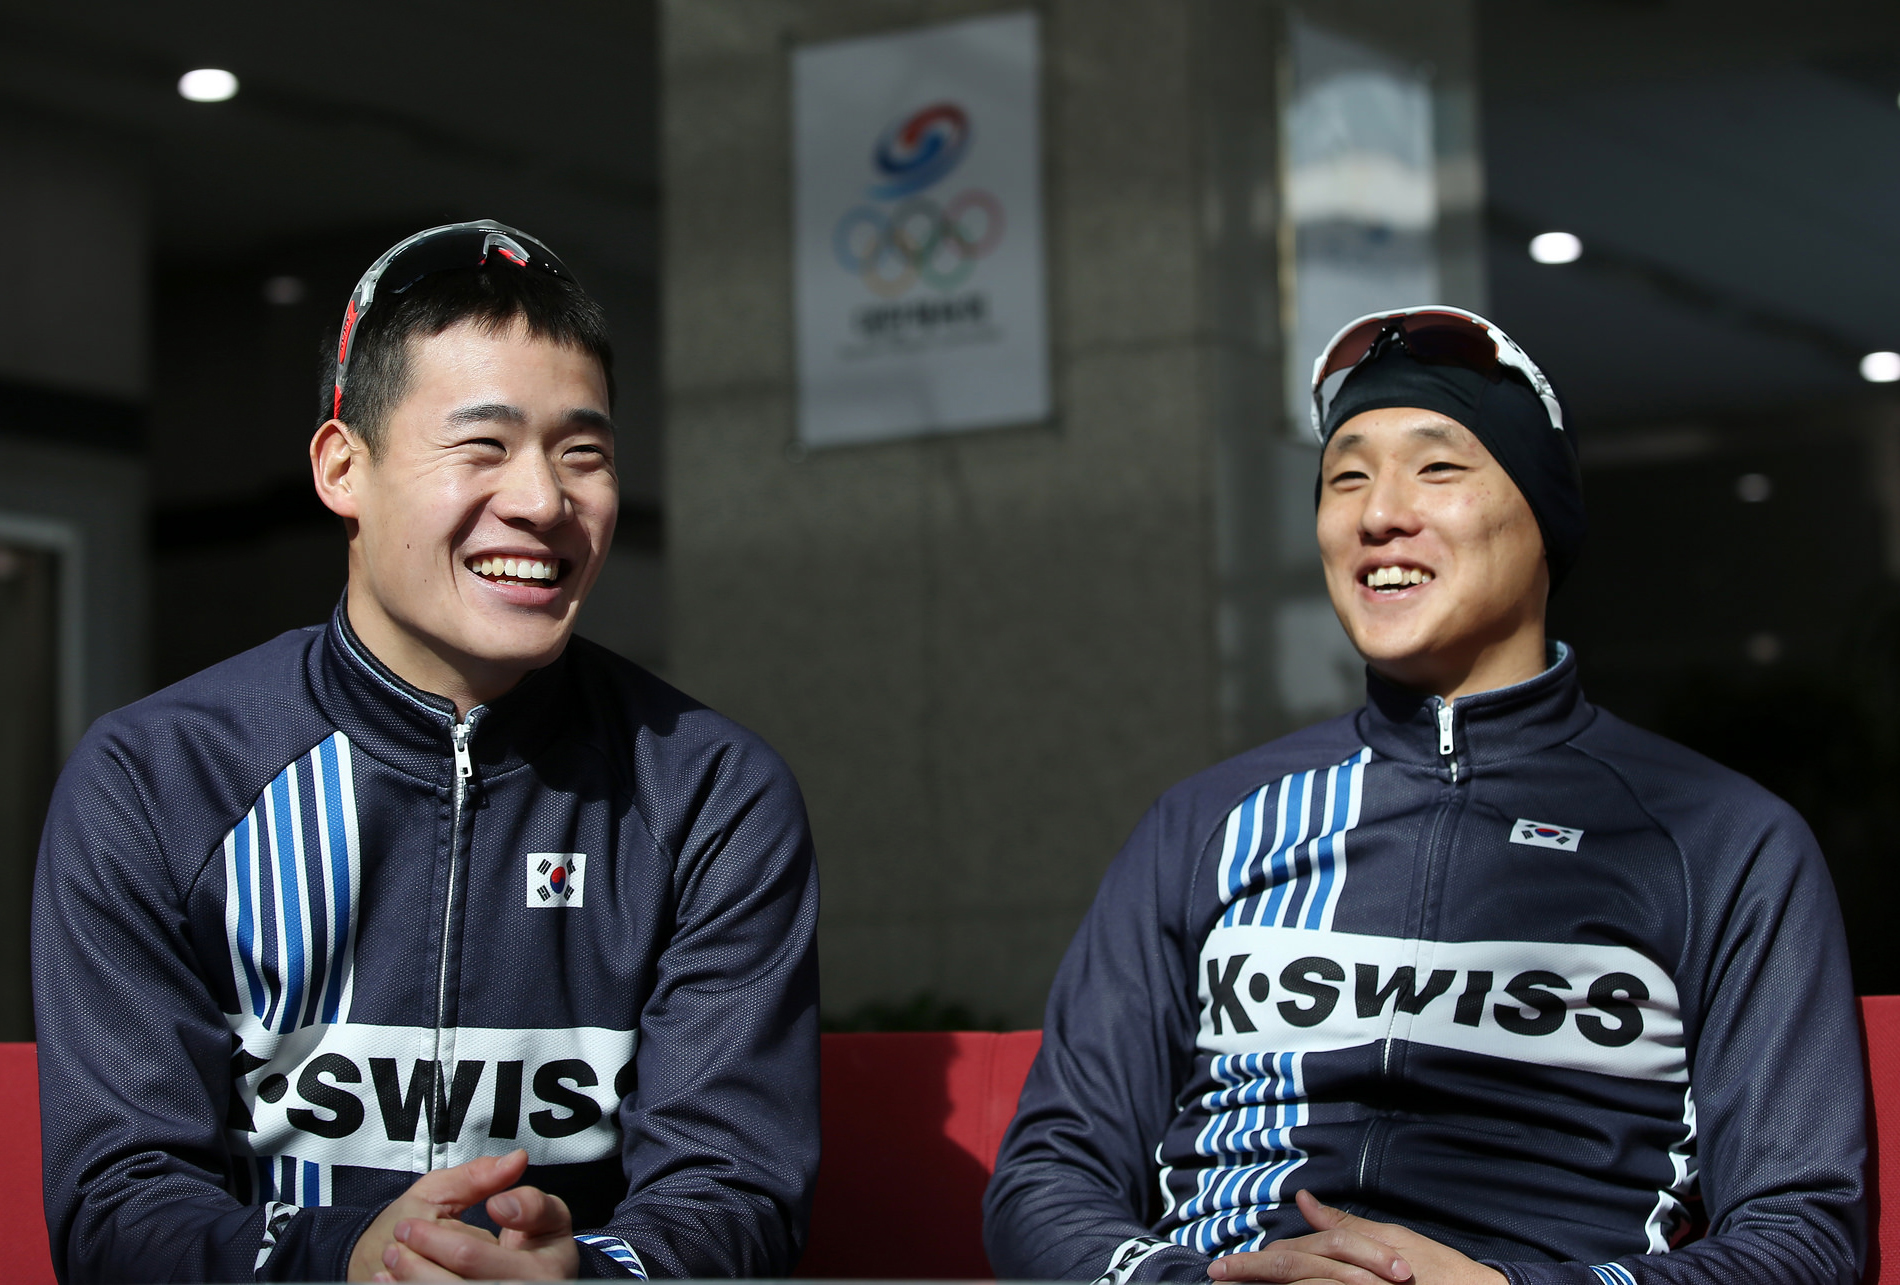 Dos triatletas surcoreanos que tienen la mira puesta en Río de Janeiro 2016